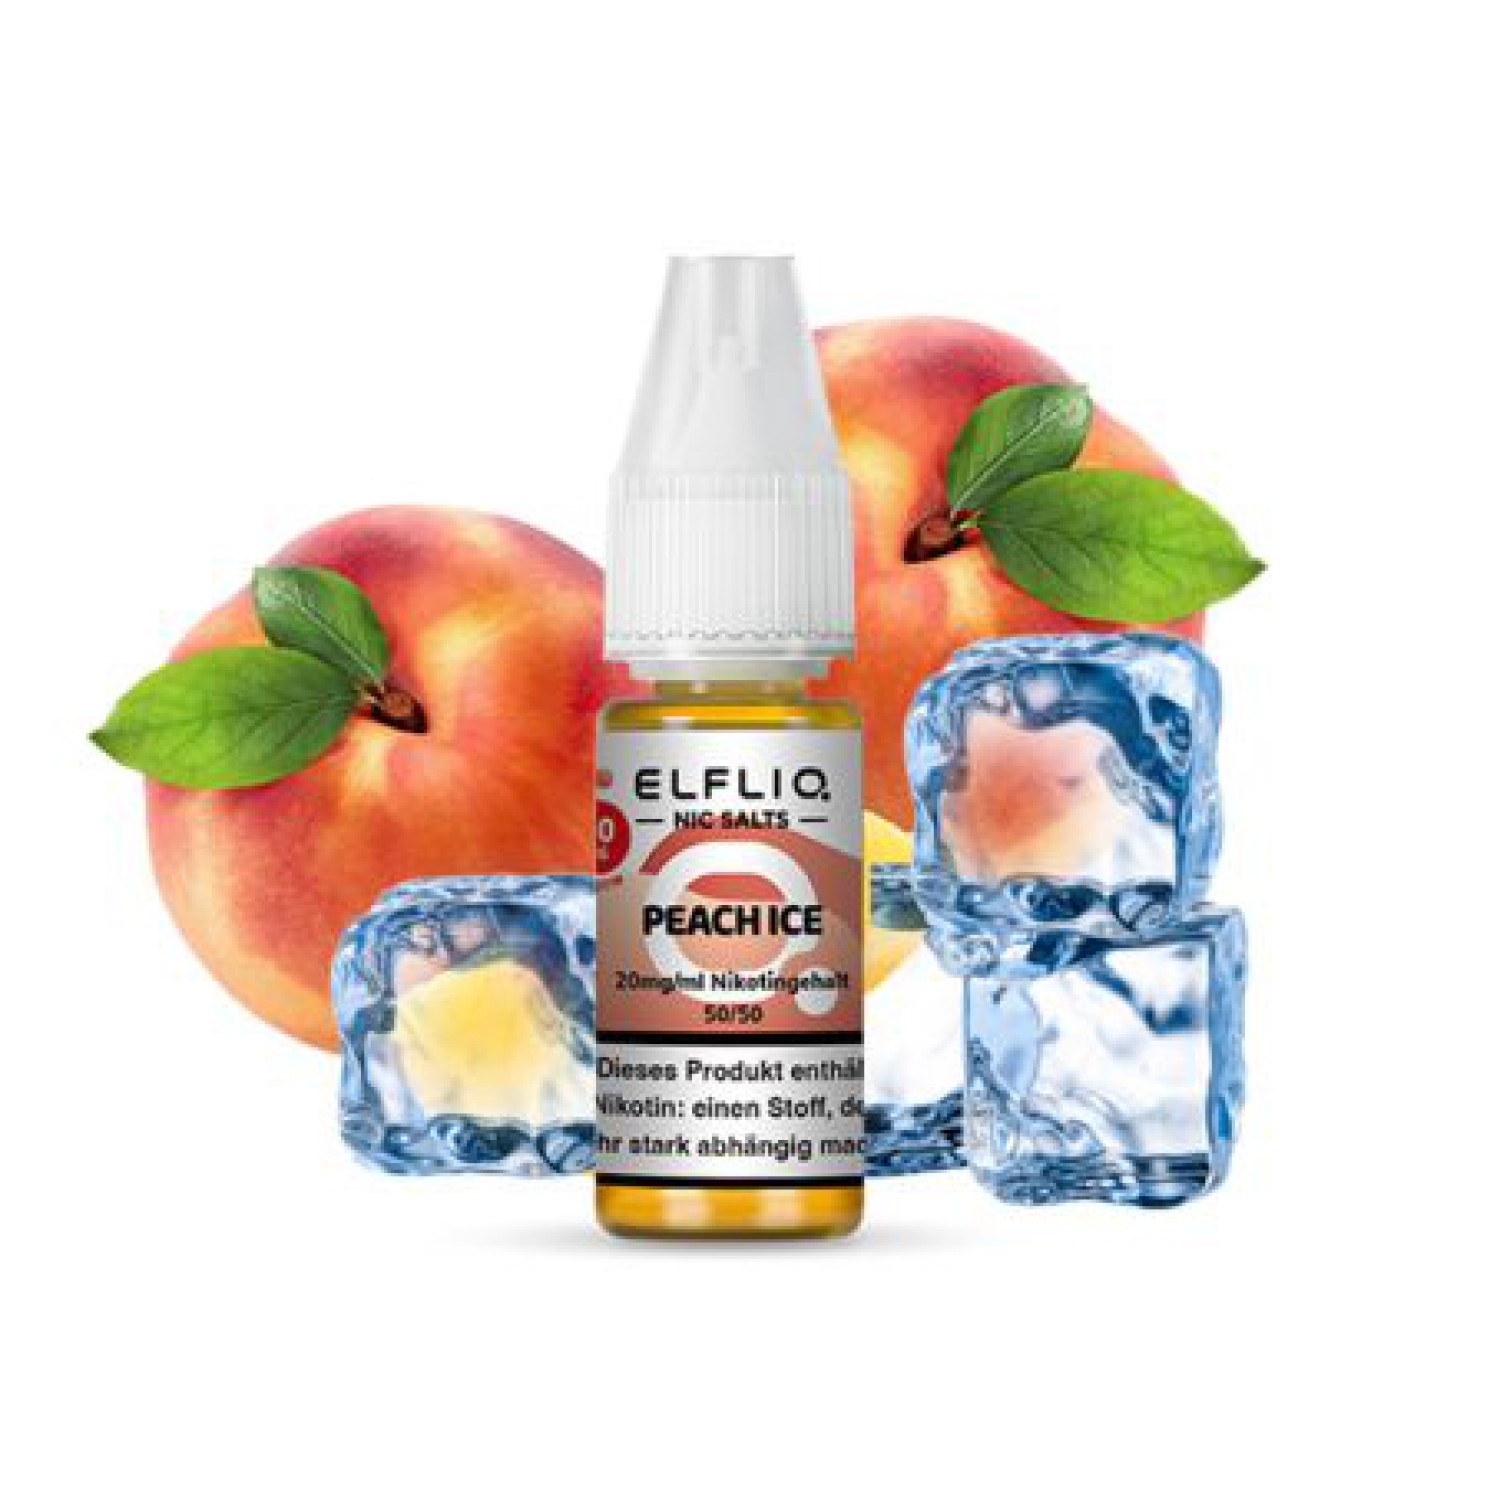 ELFBAR Elfliq 20mg " Peach Ice " Nitotinsalz Liquid 10ml